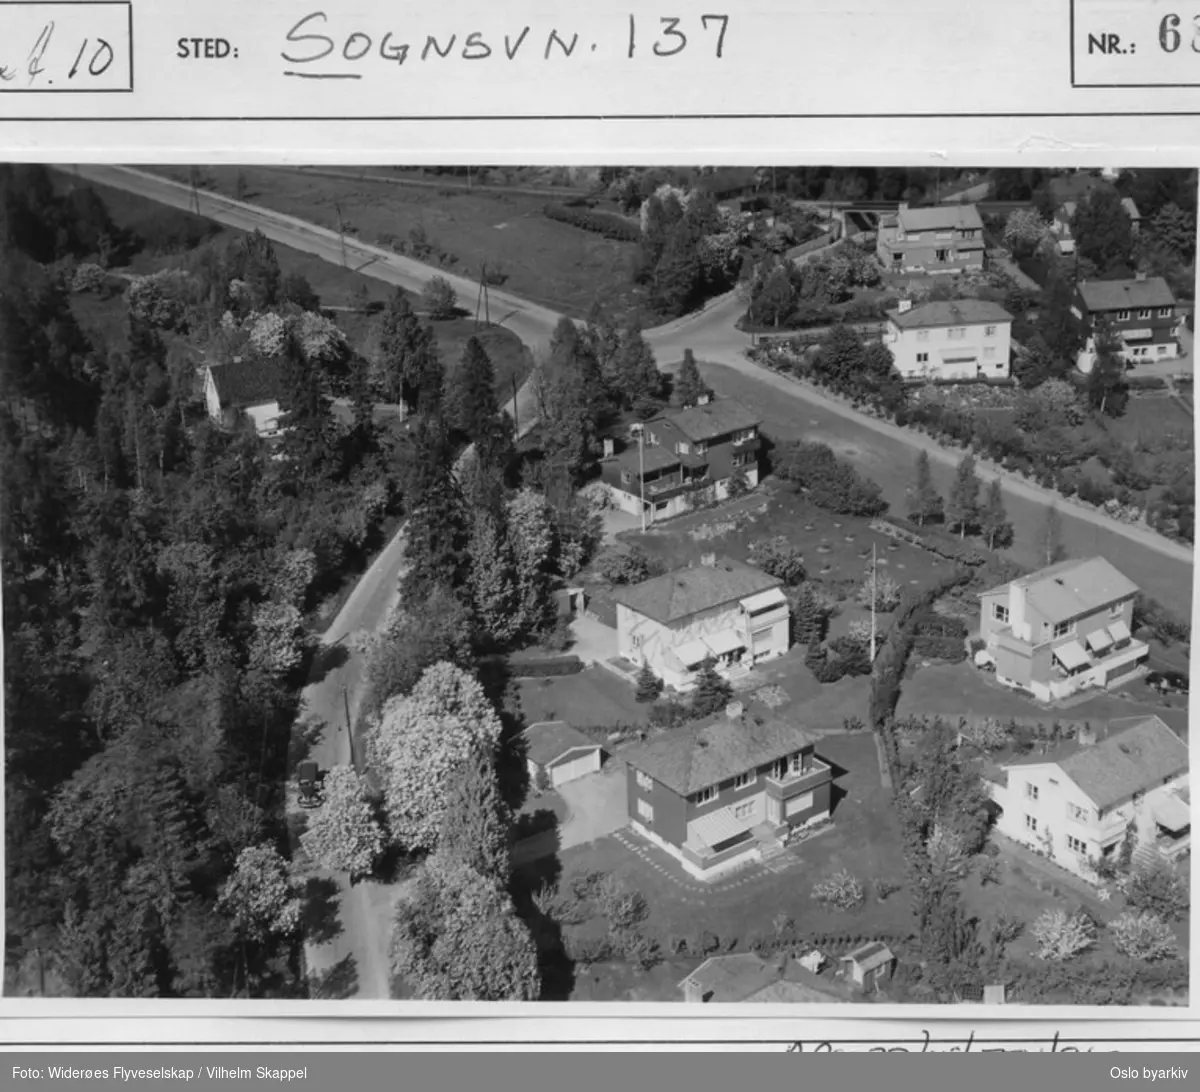 Sognsveien i krysset ved Carl Kjelsens vei, Kongleveien og Damefallene. Bildets originale tittel er feil, da det er Sogsnveien 157, 155, 153 og 148 som vises på bildet. (Flyfoto)